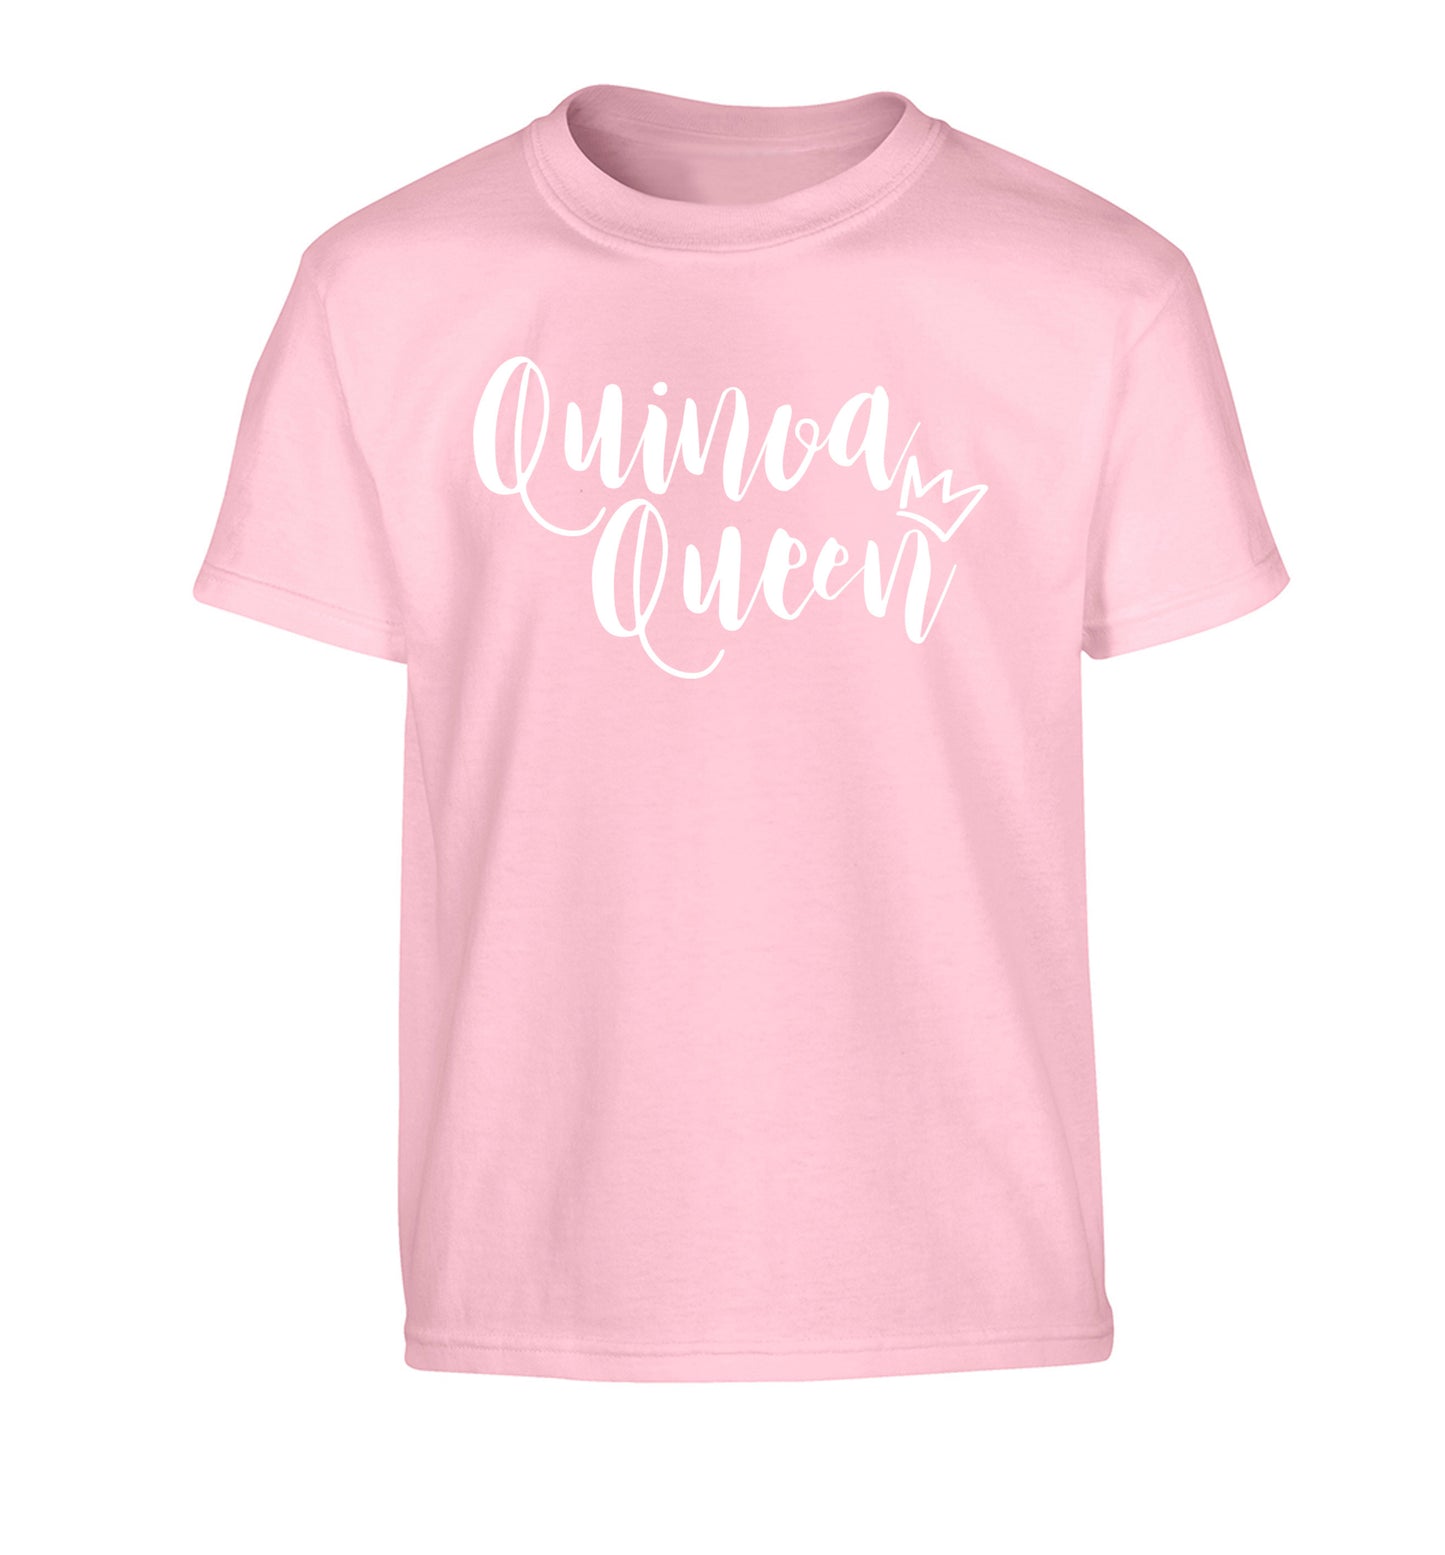 Quinoa Queen Children's light pink Tshirt 12-14 Years